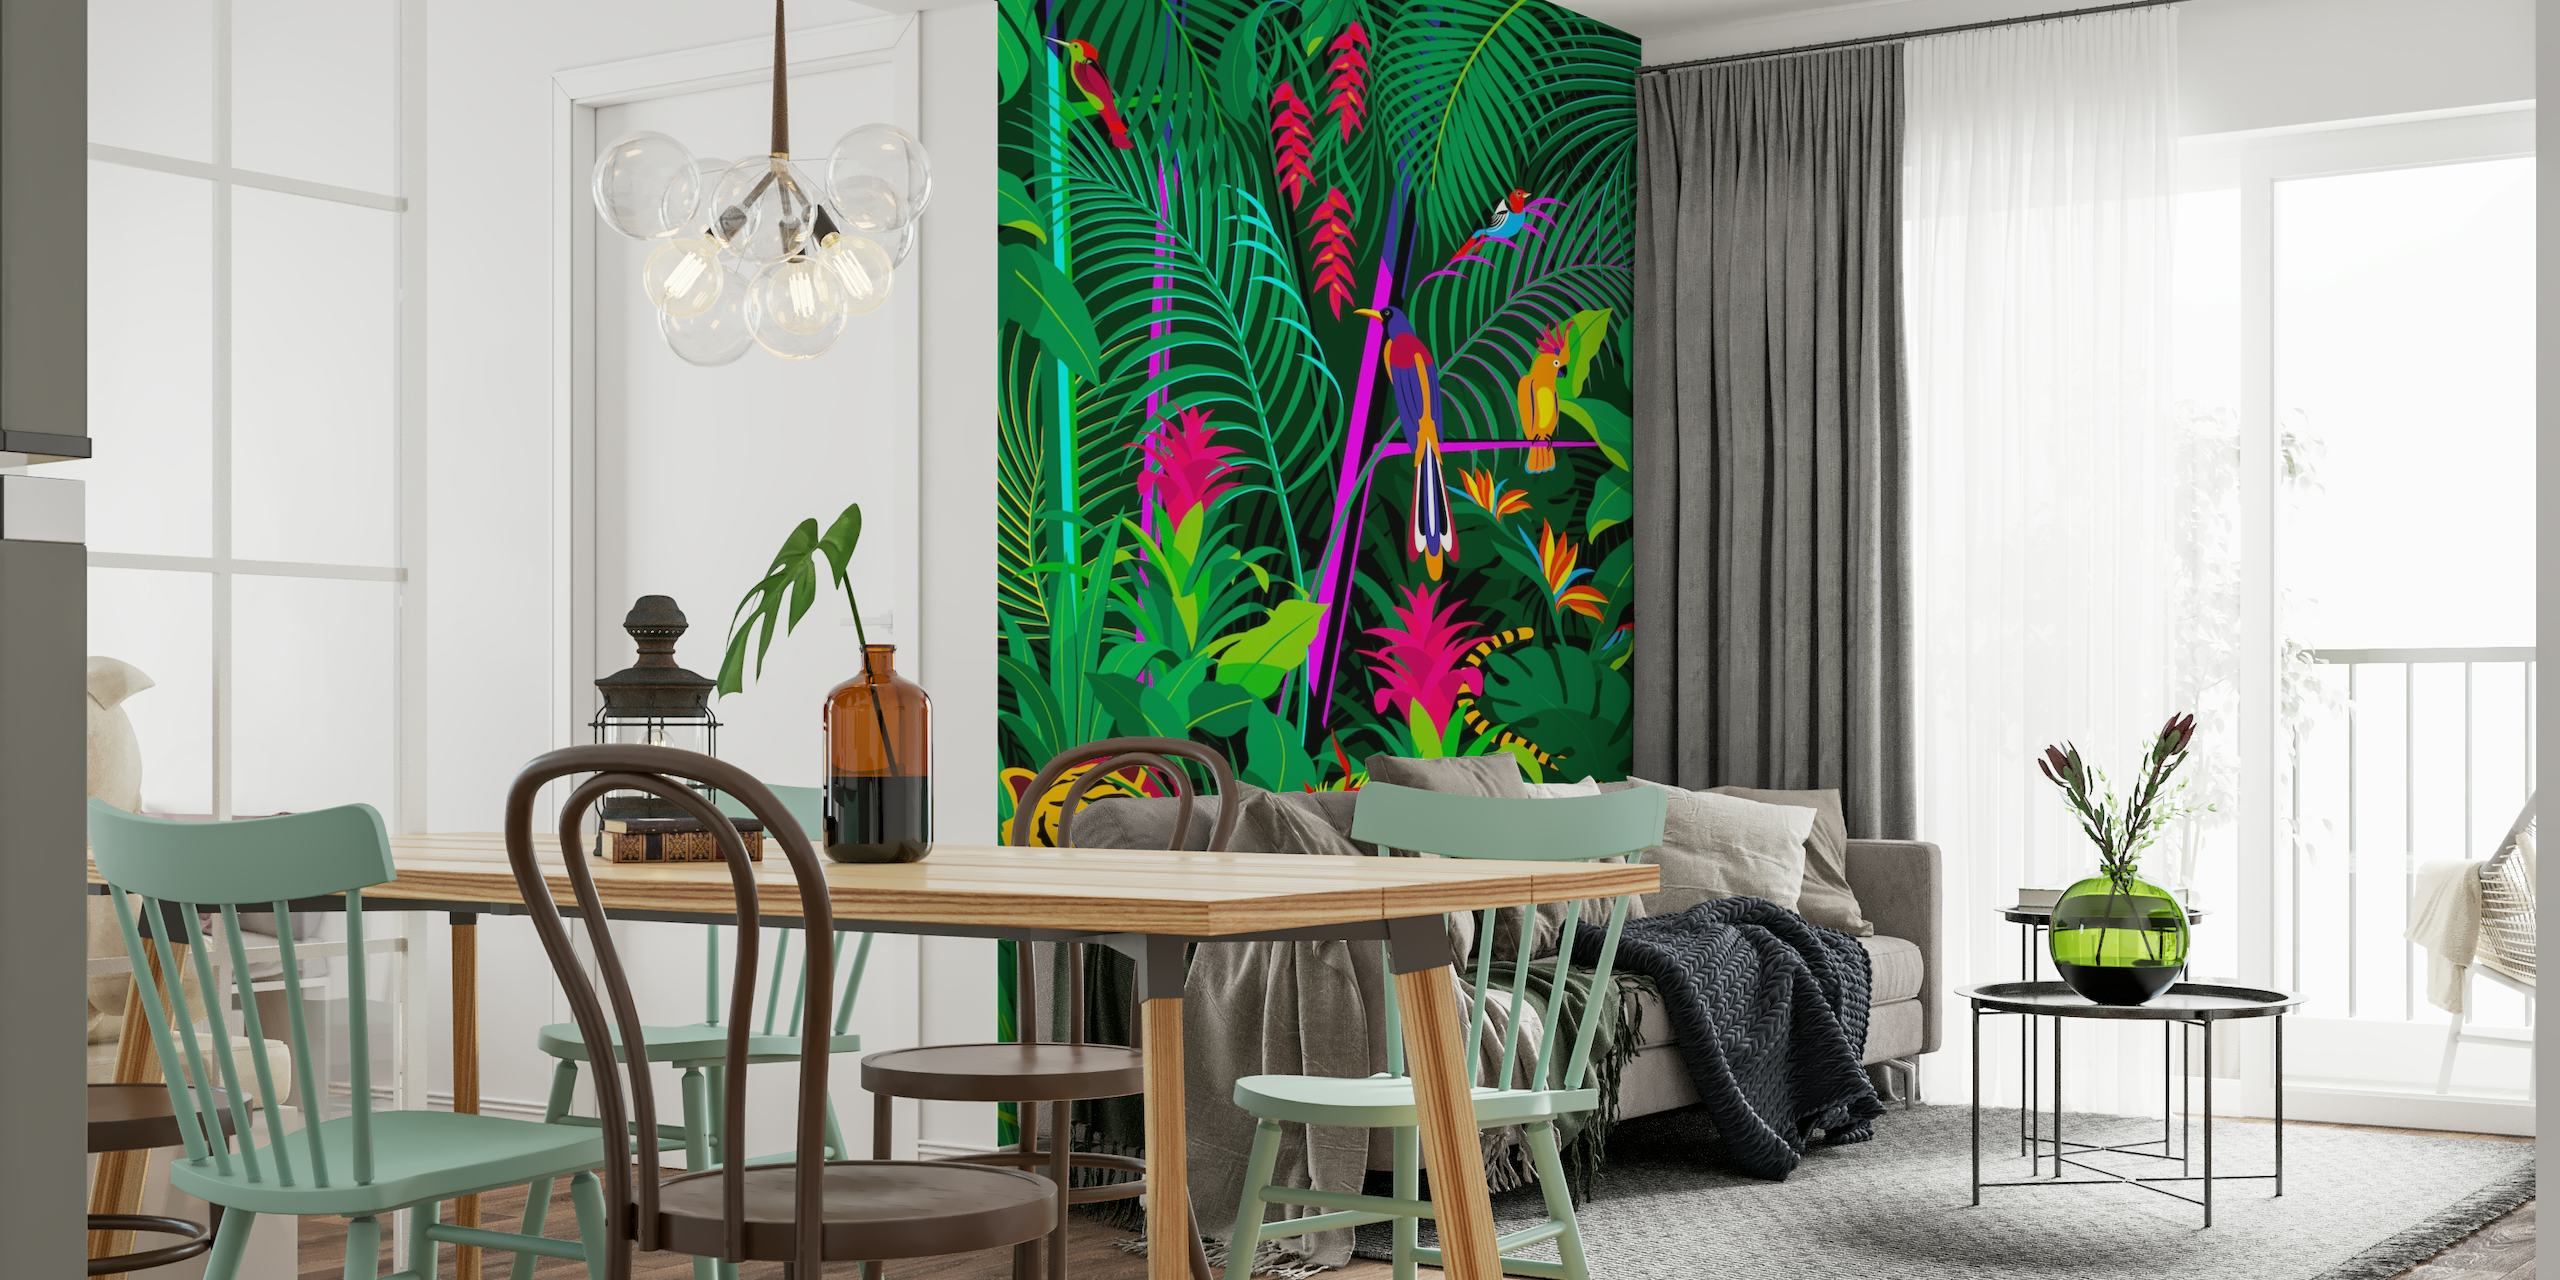 Mural de pared de jungla tropical con denso follaje verde, flores coloridas y un tigre escondido